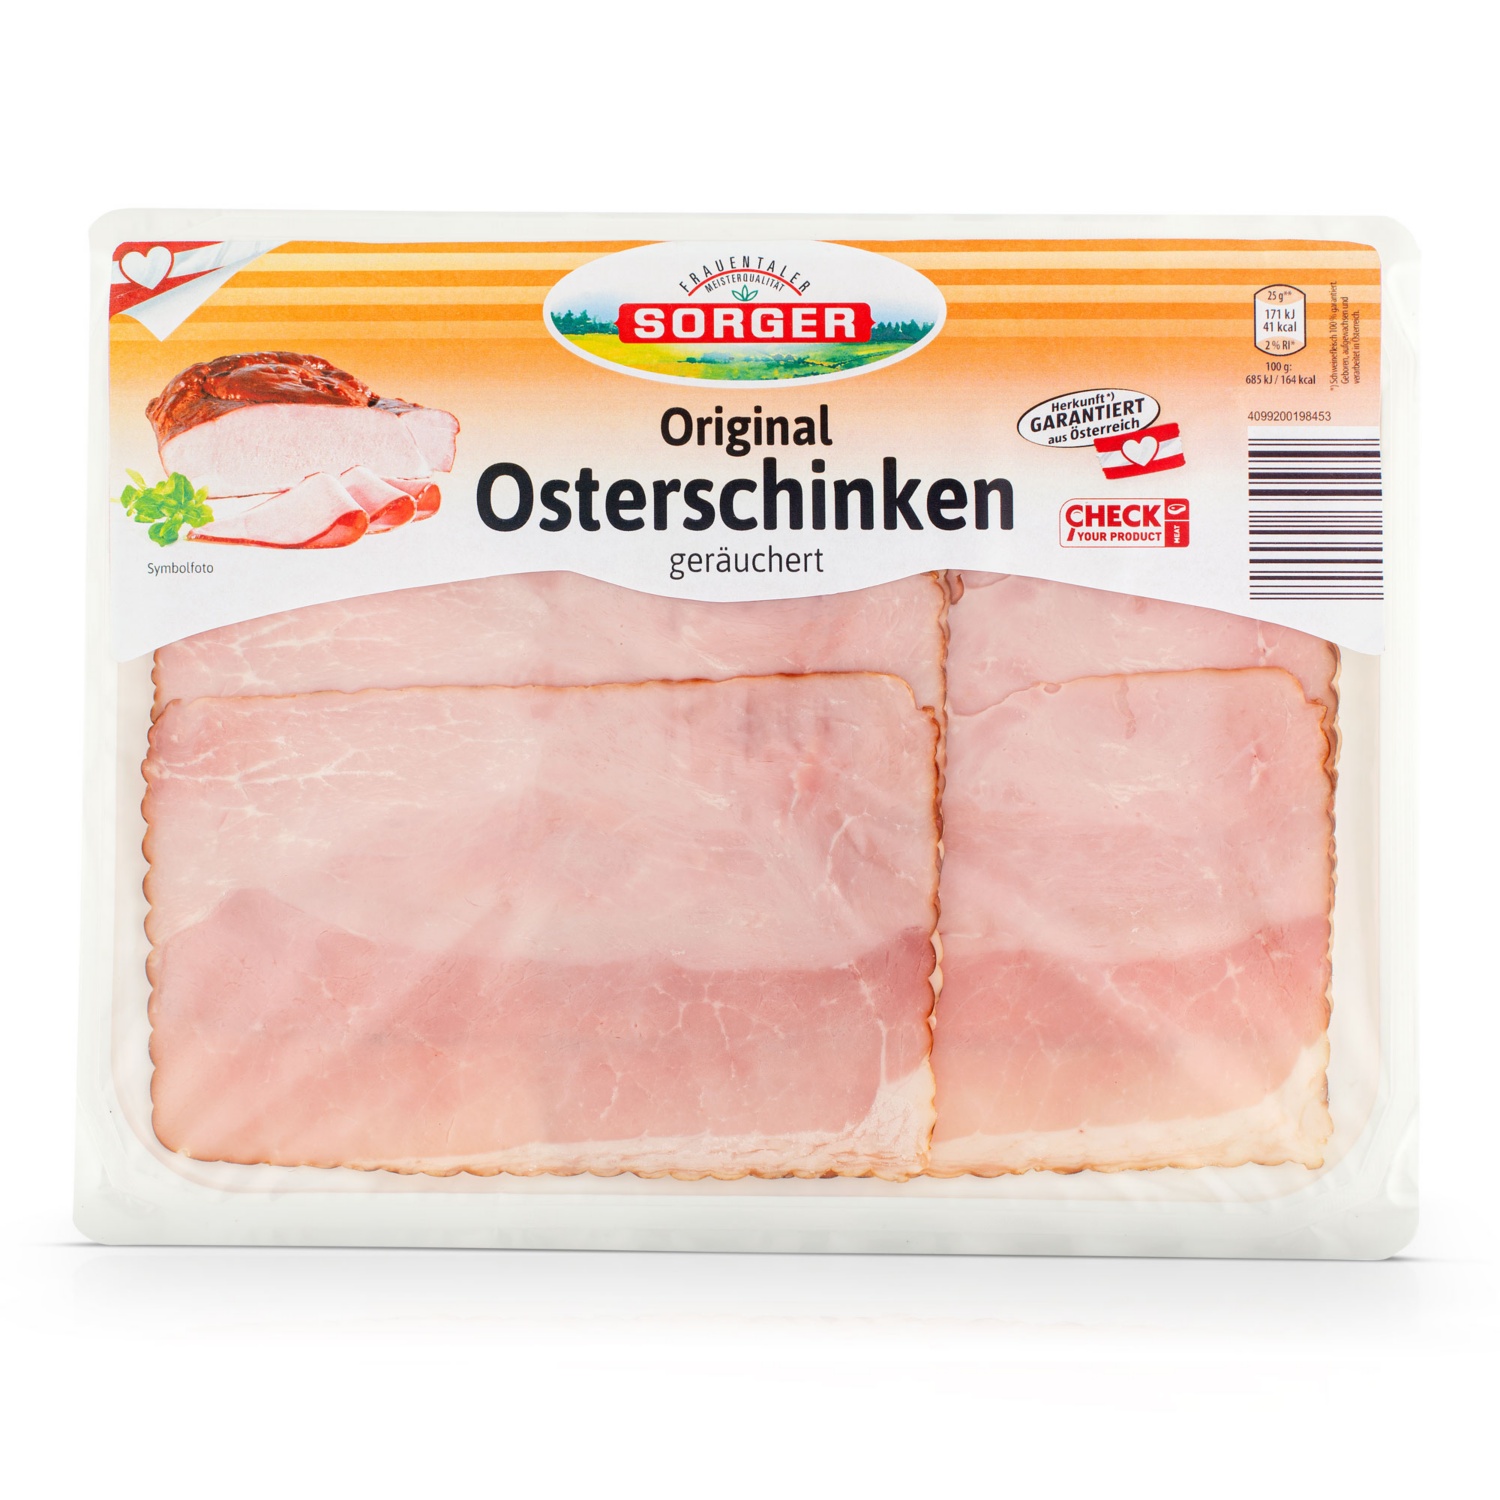 Original 
Osterschinken